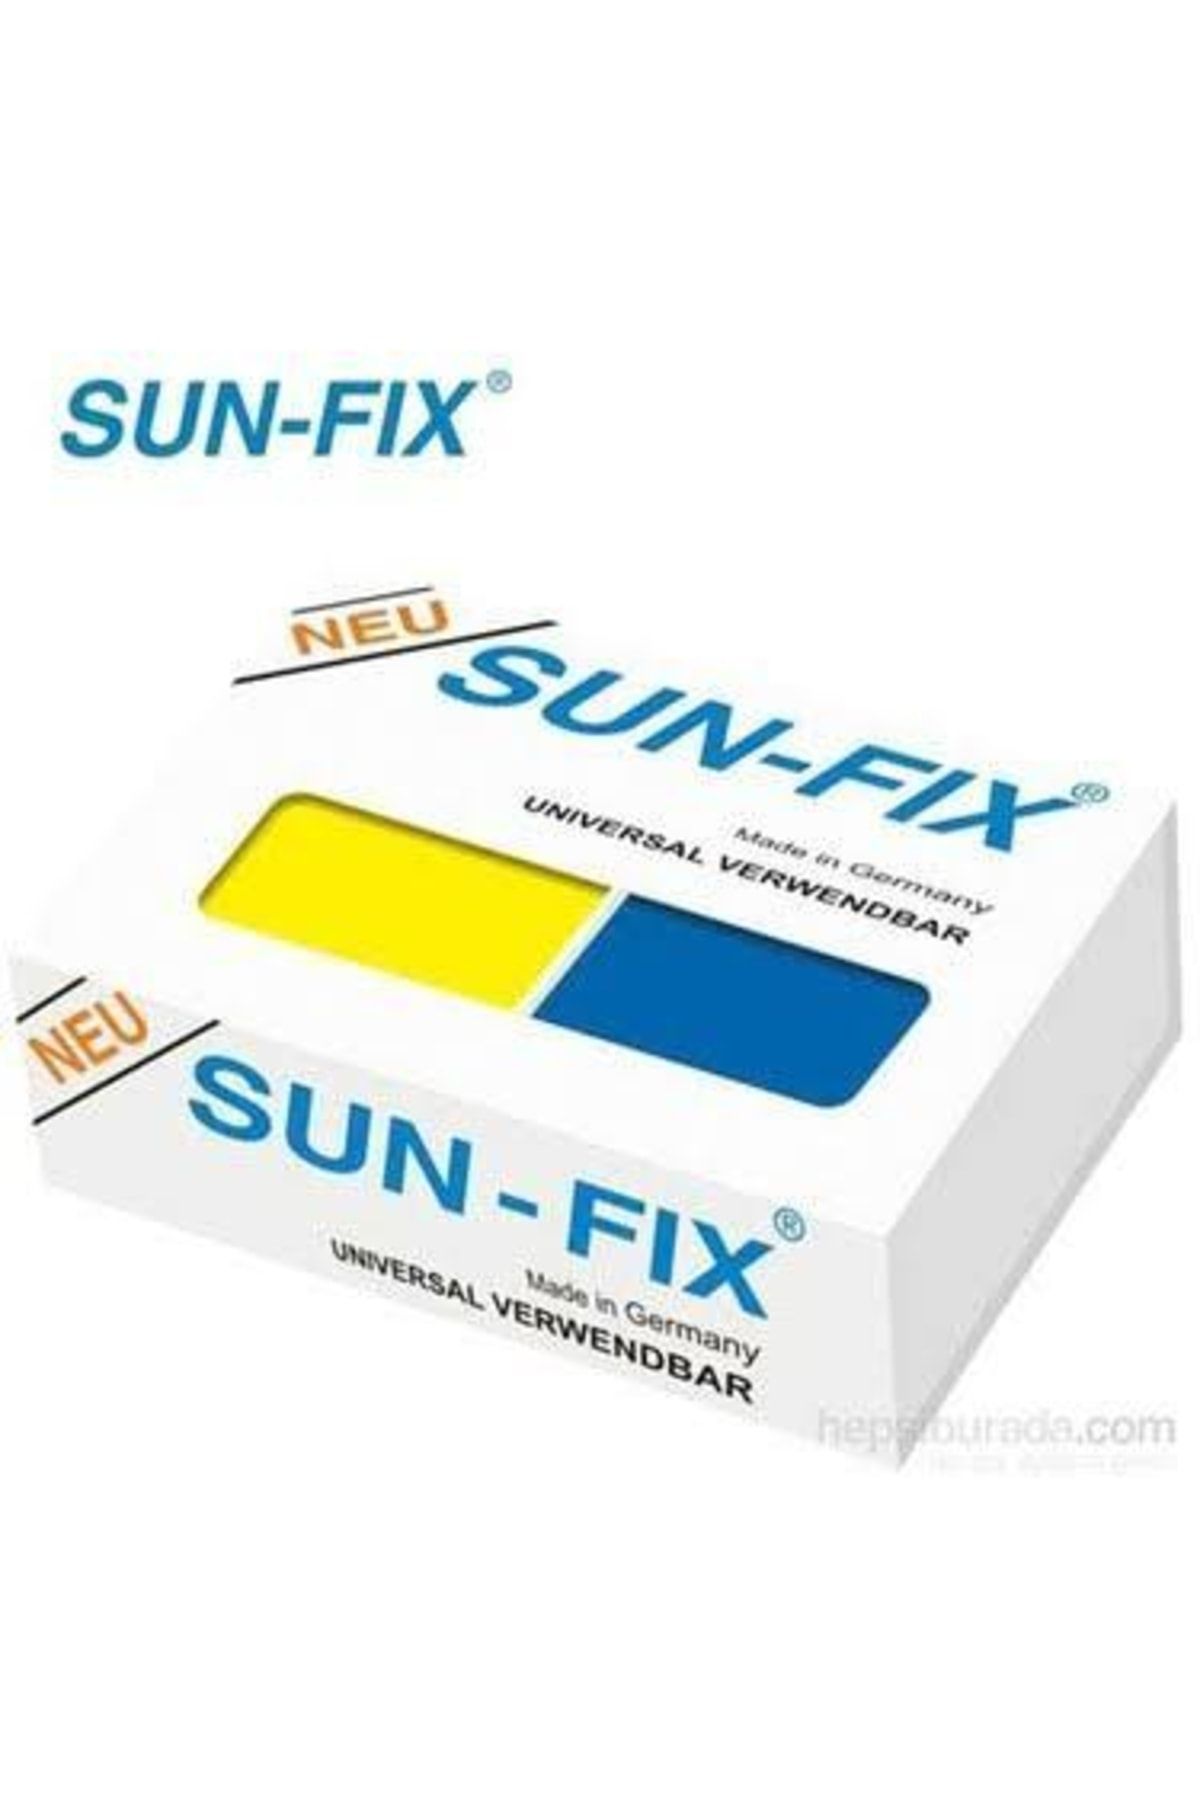 Sun-Fix Sun Fıx Macun Kaynak 100gr